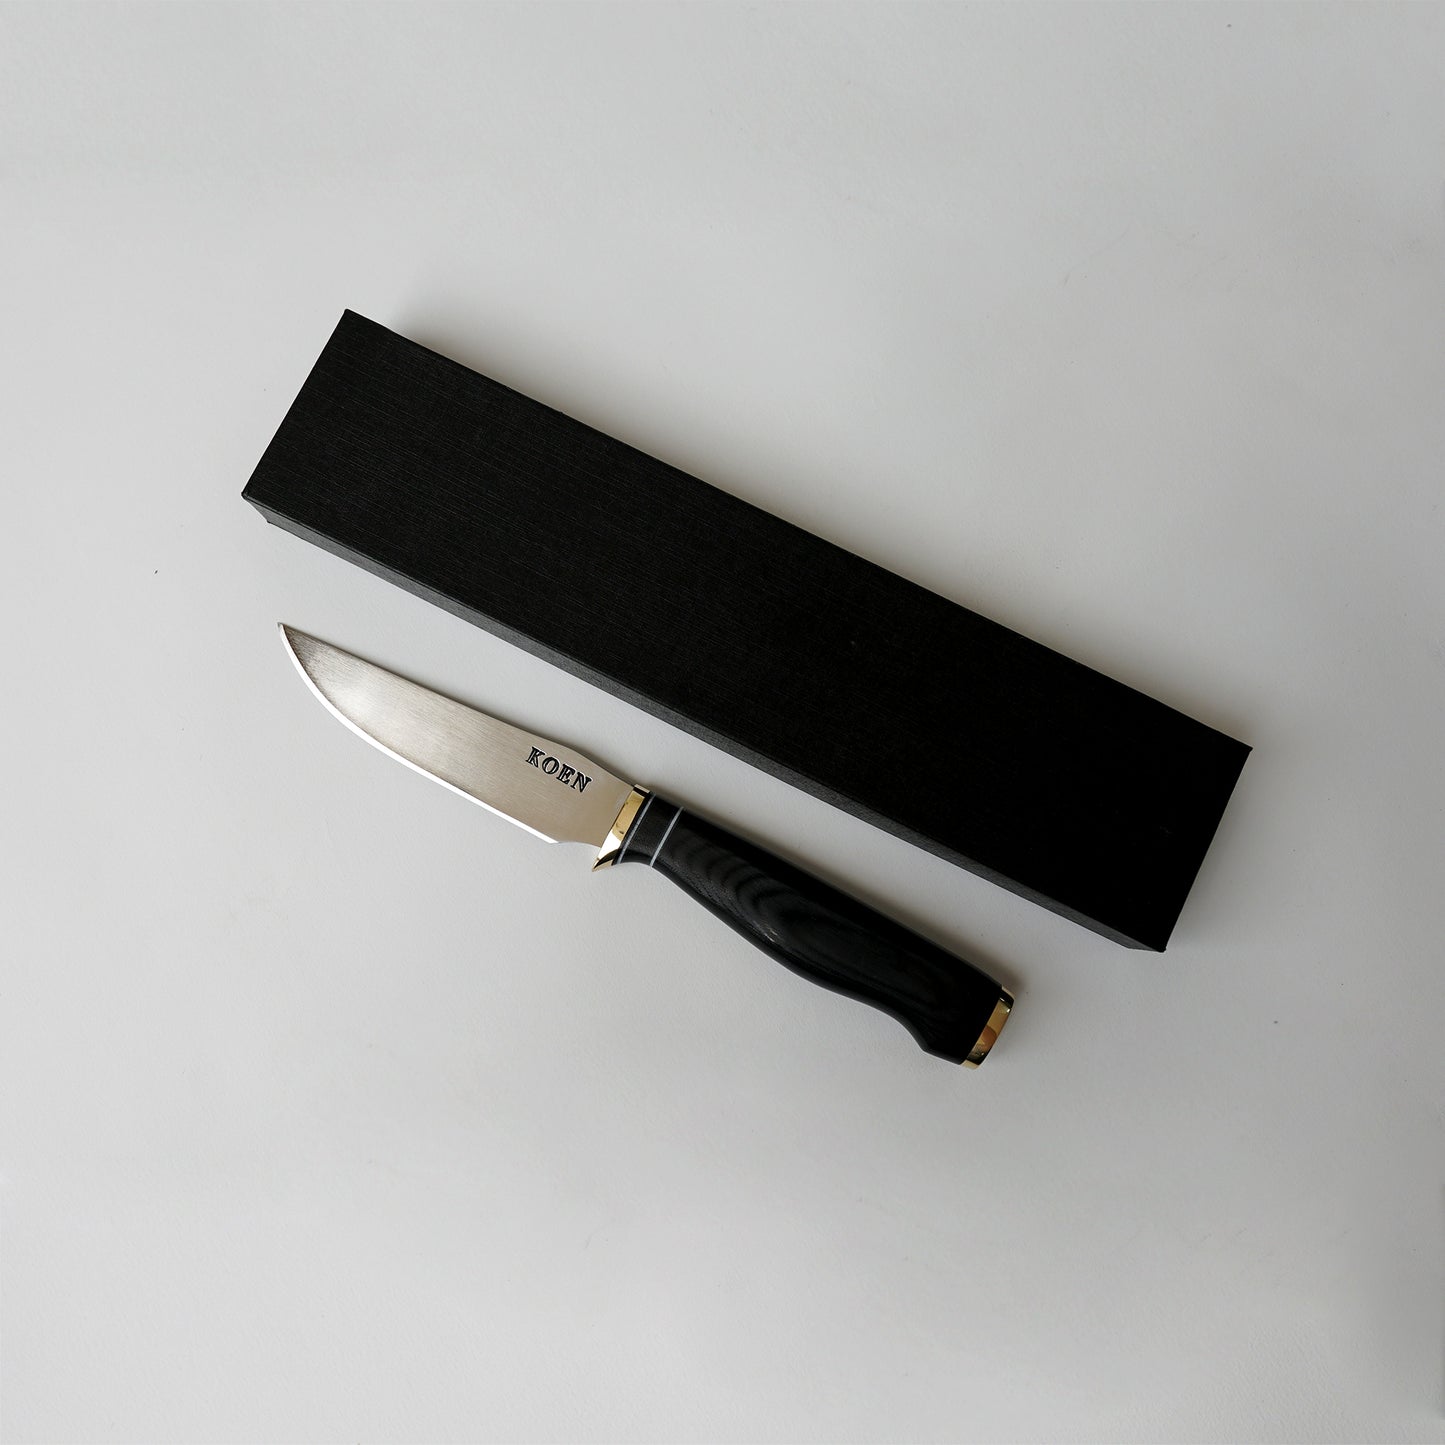 Cuchillo de Mesa Prime KOEN for Chefs Acero Inox. Color Negro